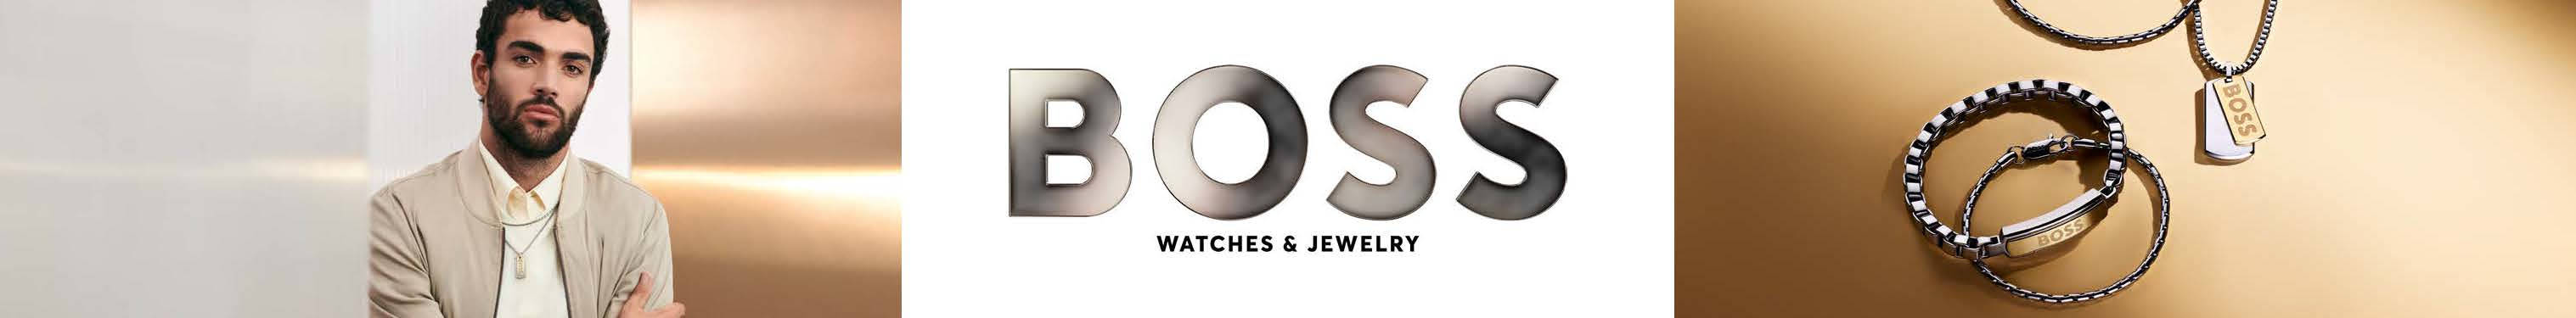 brand-boss-jewelry-1.jpg